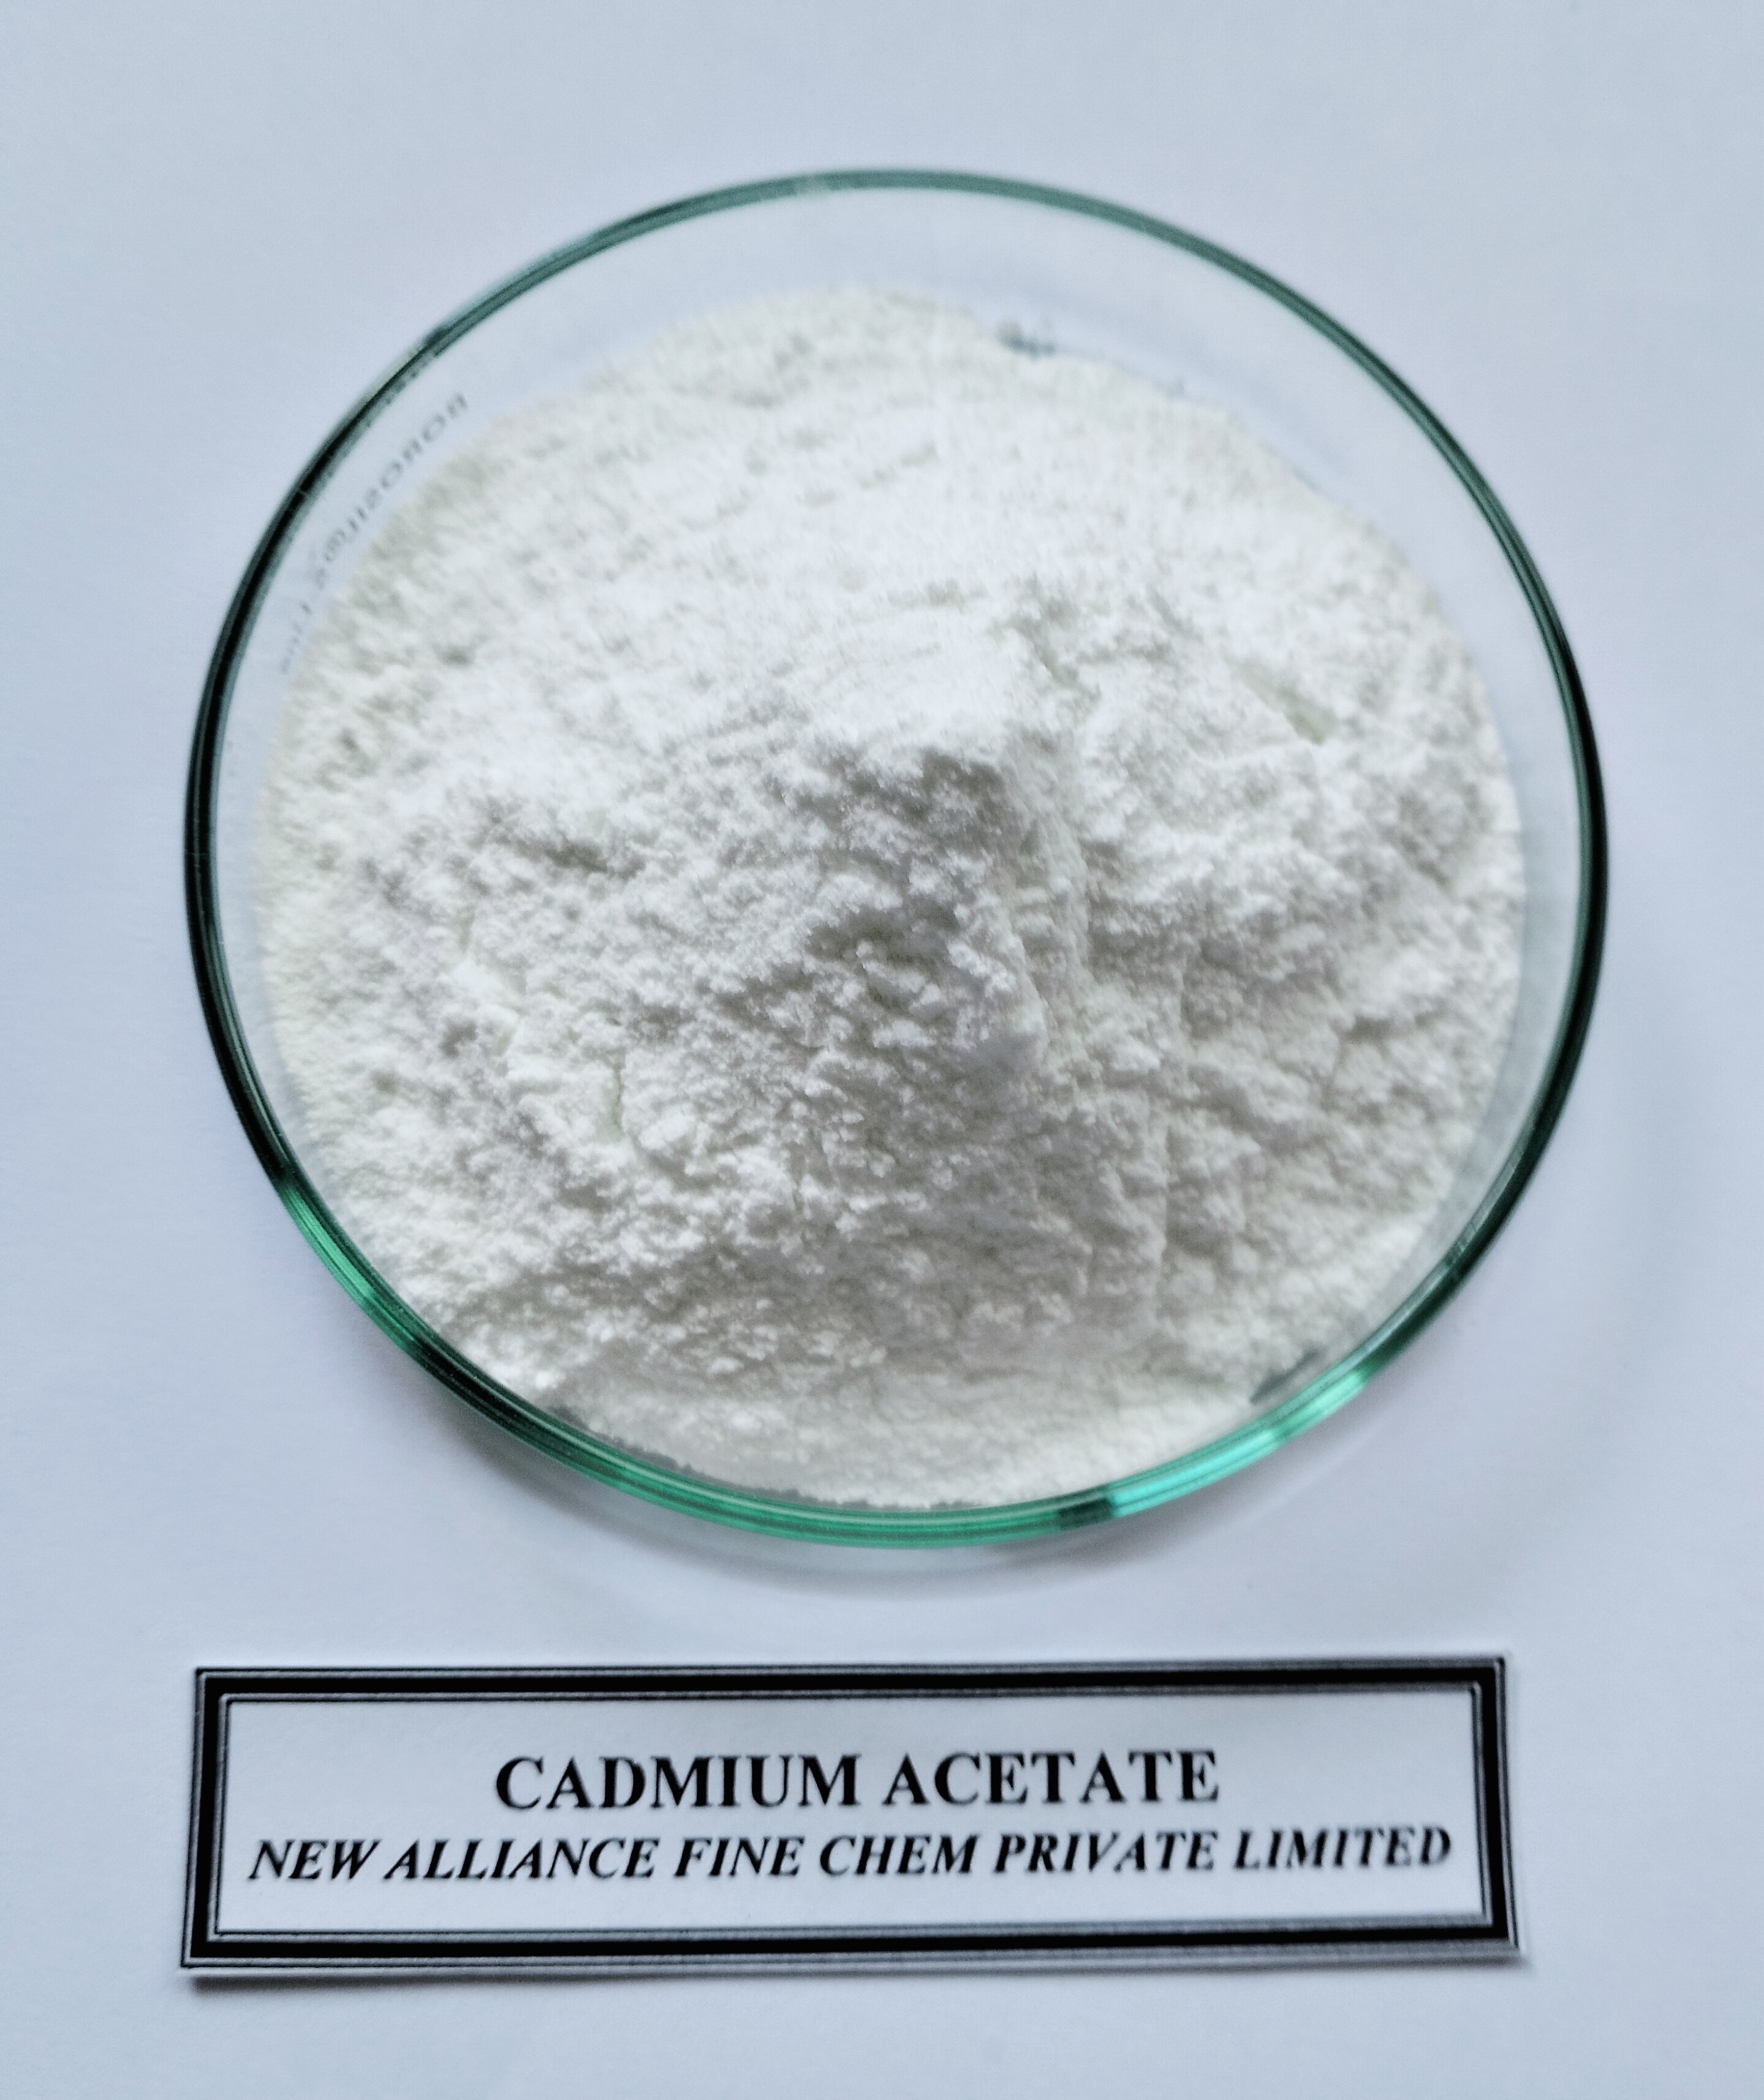 Cadmium Acetate